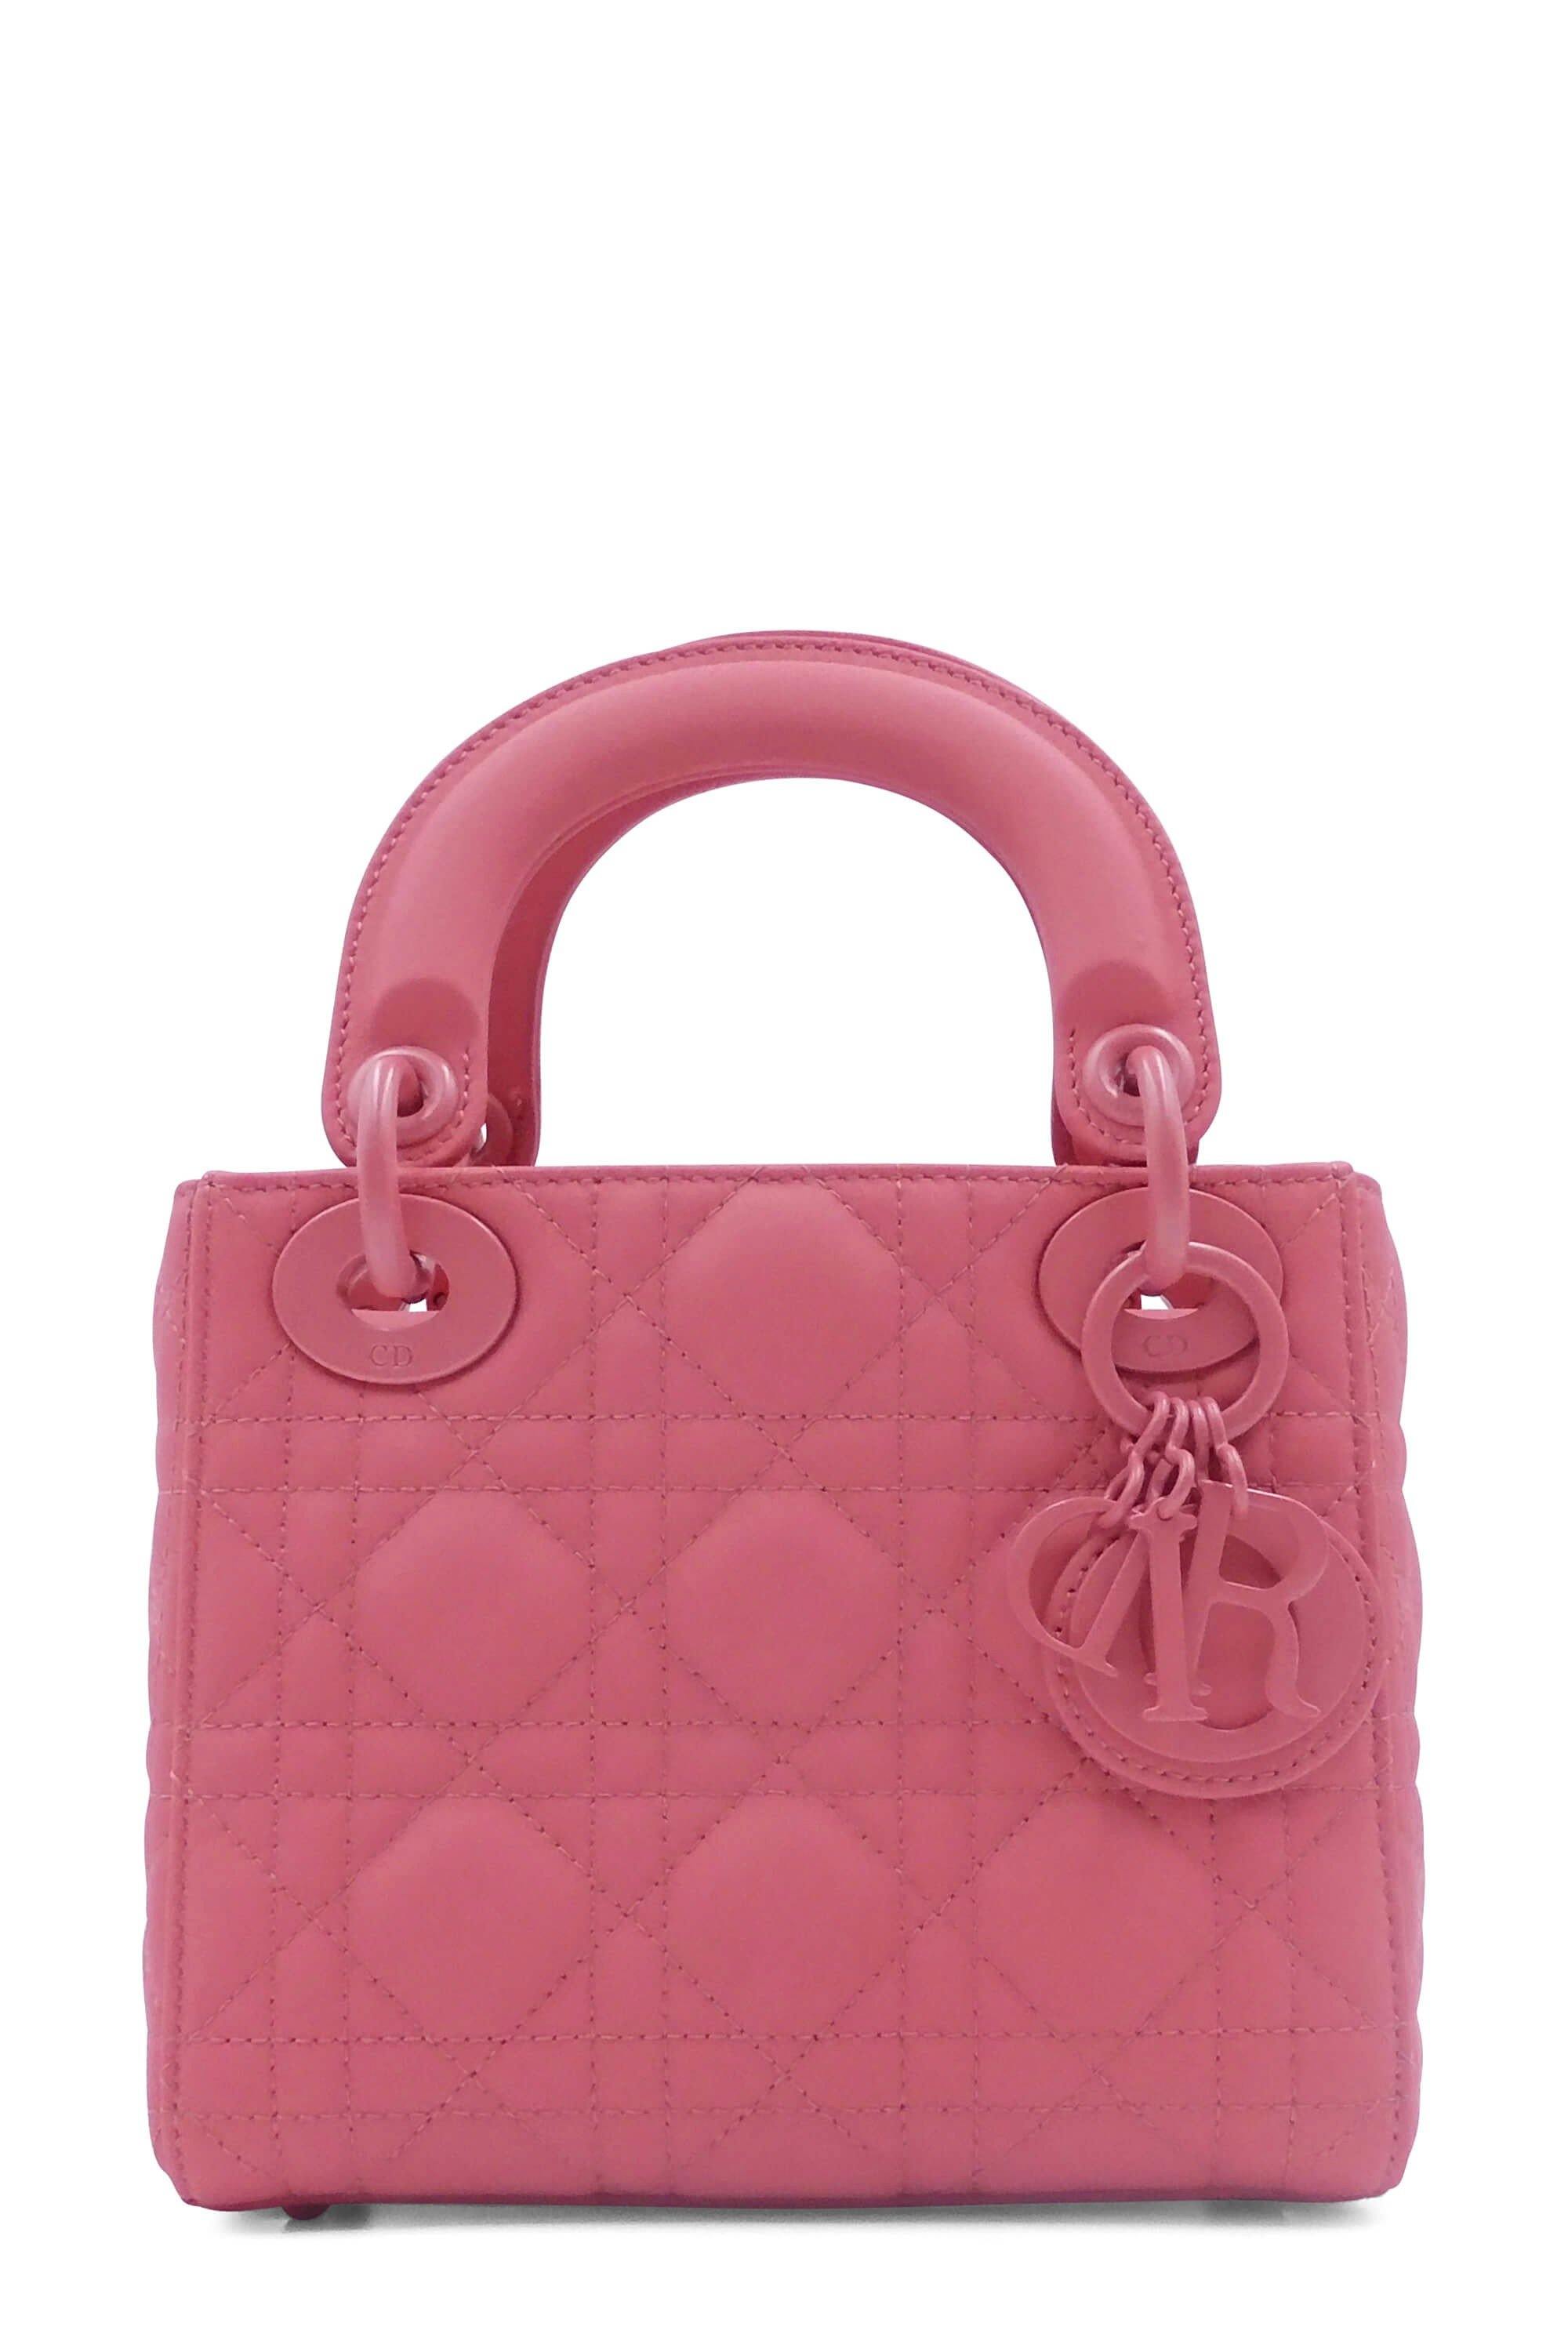 Medium Lady Dior Bag Blush Cannage Lambskin  DIOR CH